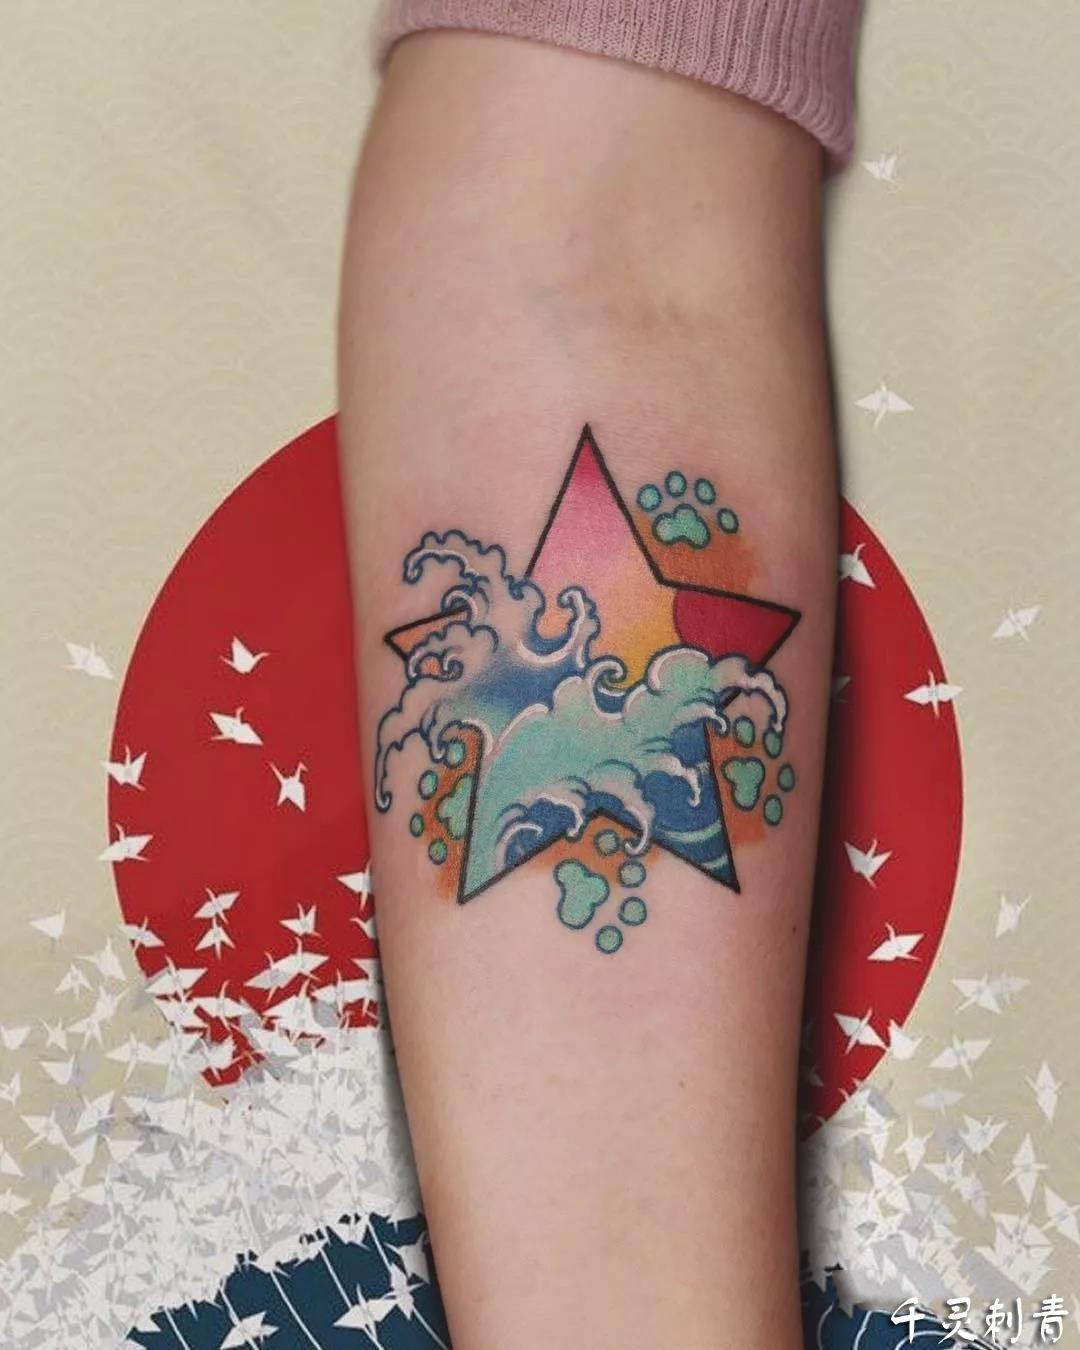 小臂五角星海浪纹身,小臂五角星海浪纹身手稿,小臂五角星海浪纹身手稿图案